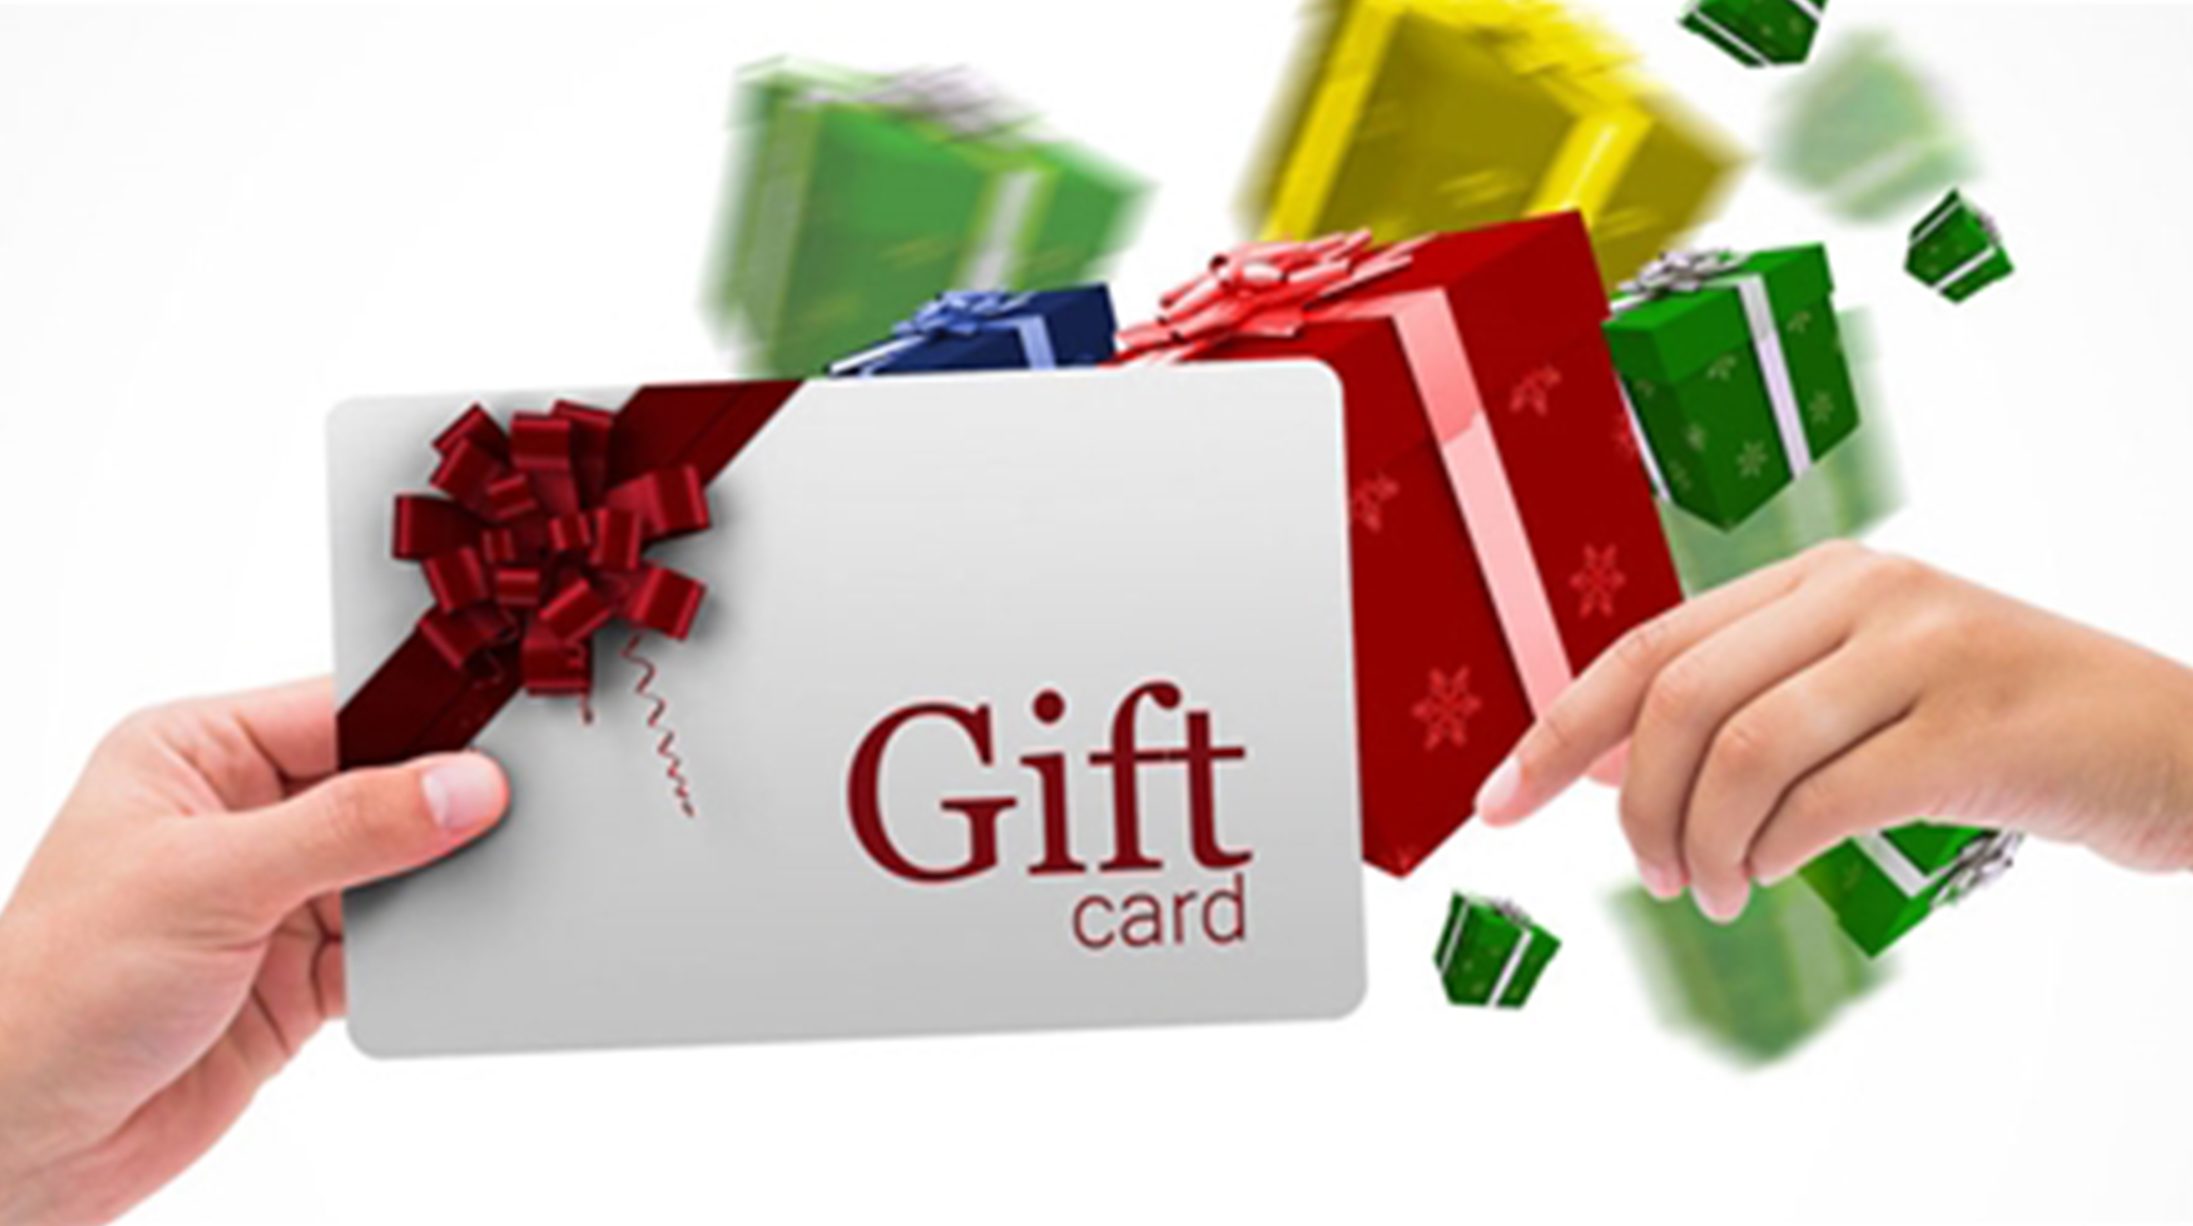 Gift card là món quà ý nghĩa và tiện lợi cho đối tác của bạn